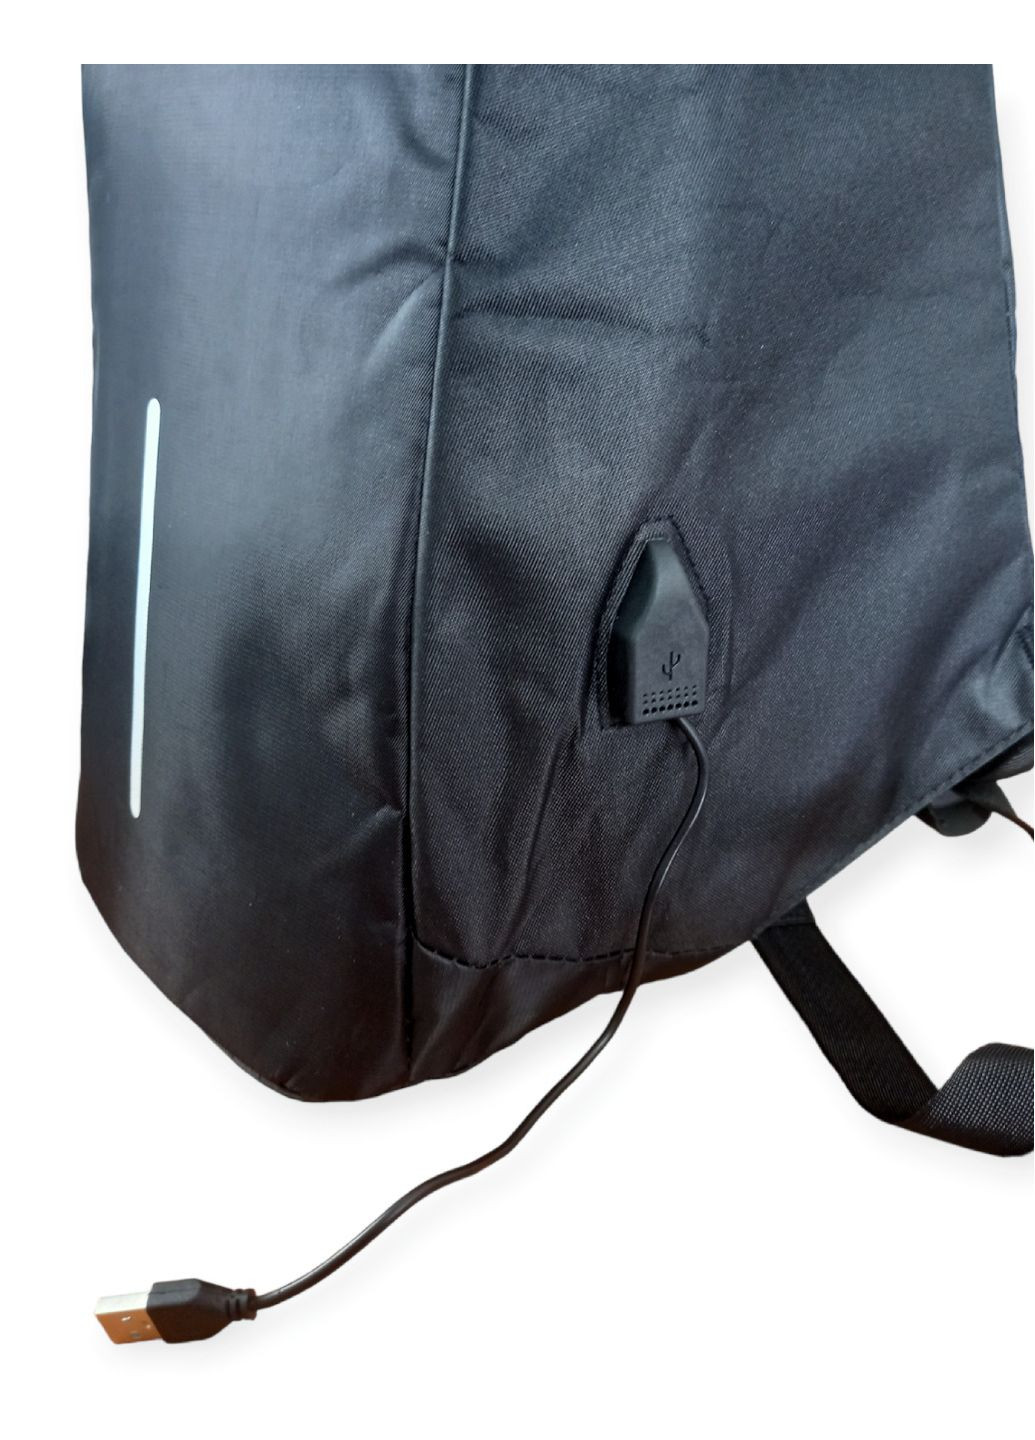 Рюкзак антивор с разъемом USB портфель сумка Bobby с защитой от воров большой для работы учебы путешествий No Brand (260601831)